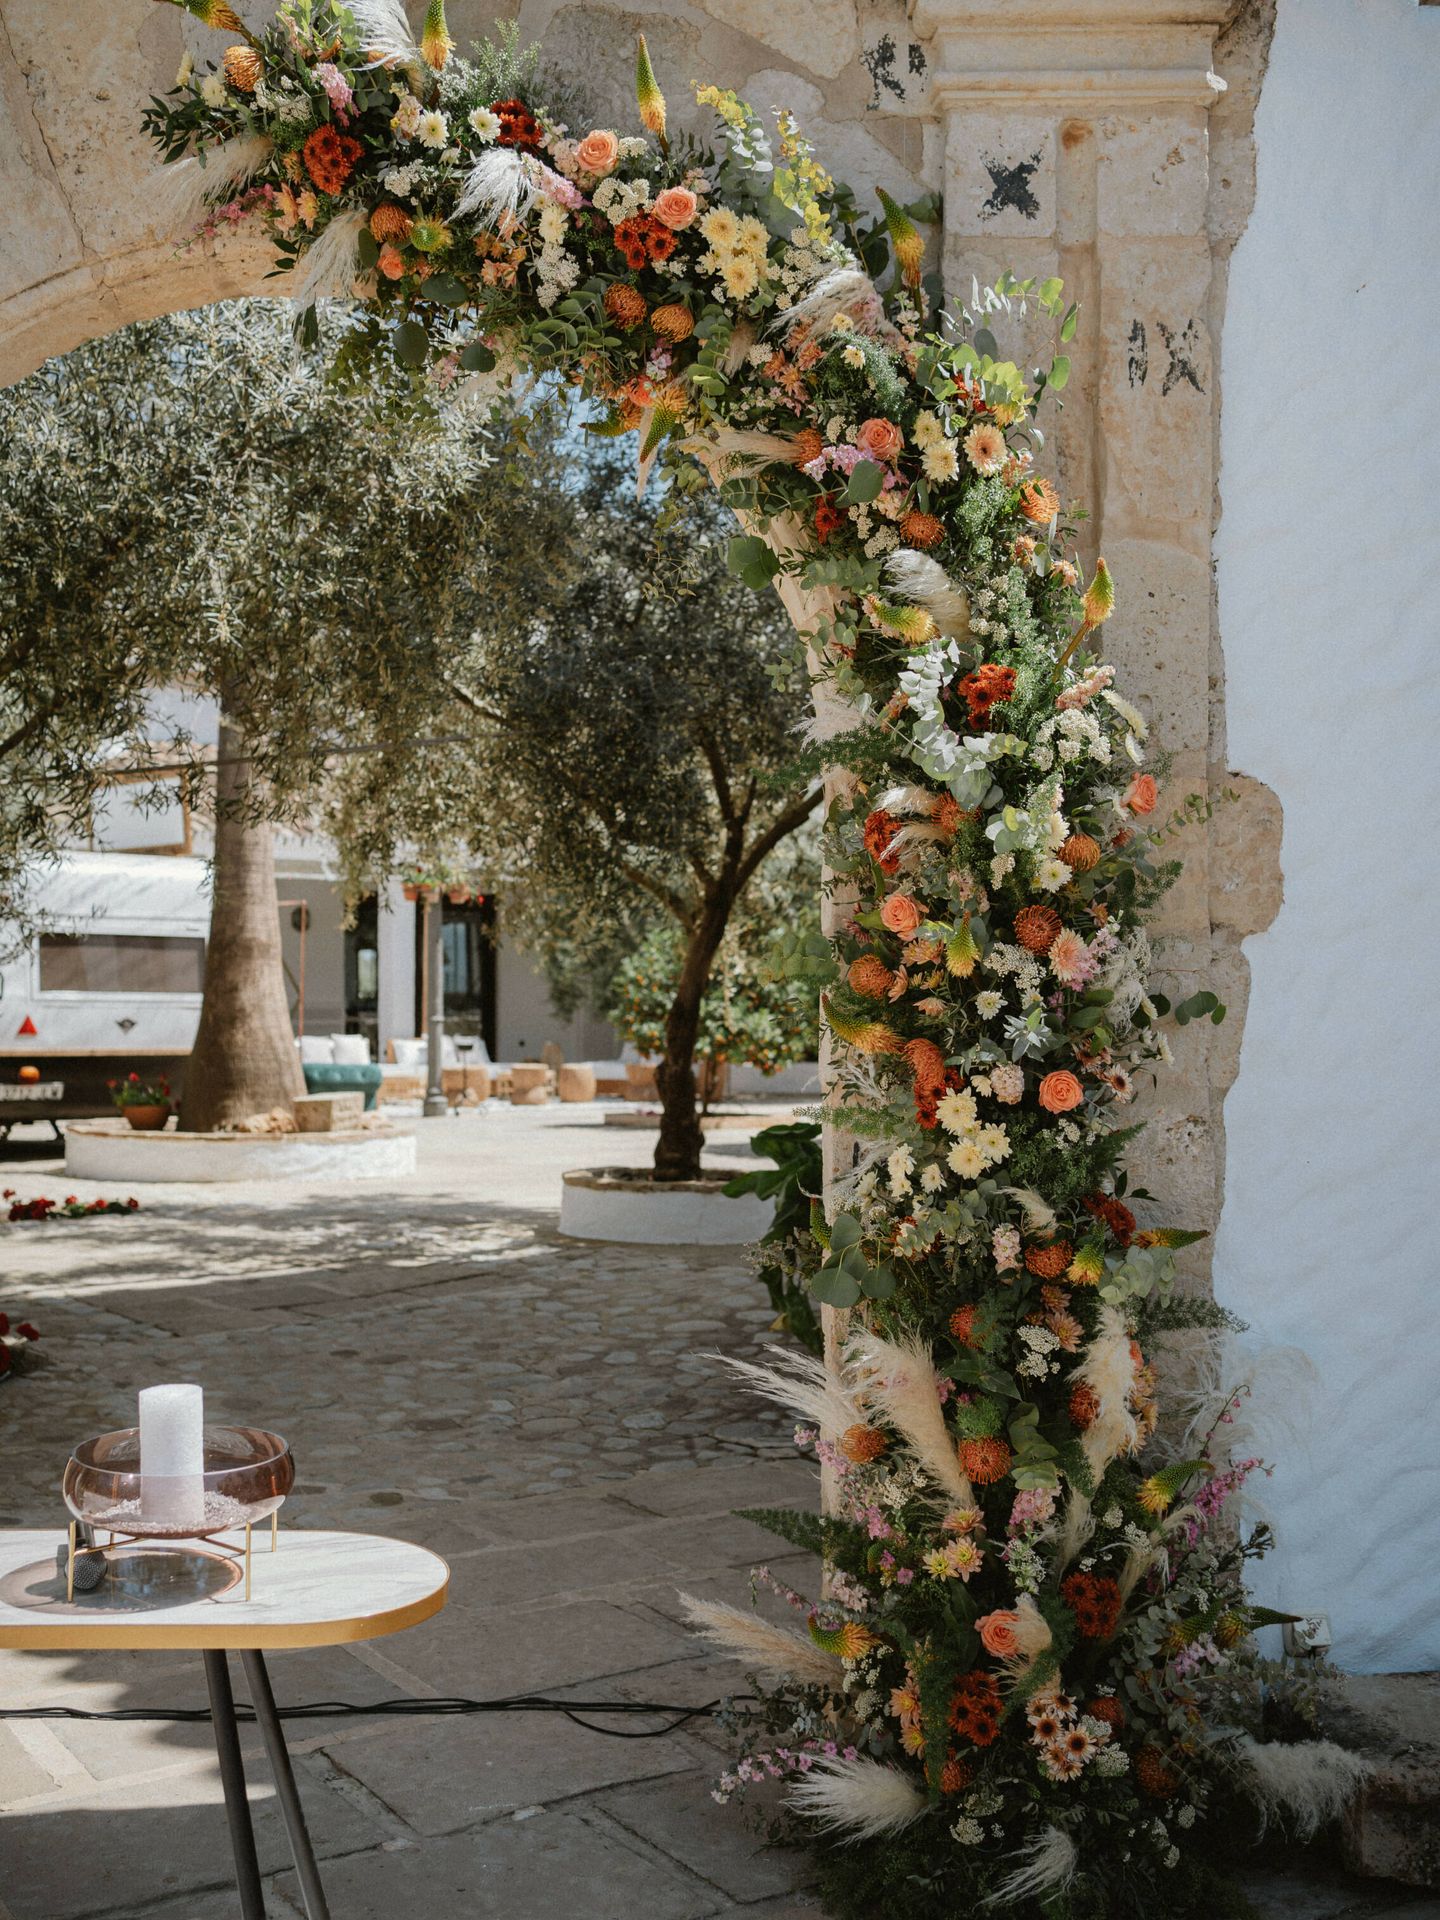 Detalle de la boda en Málaga. (Ópalo Photos)